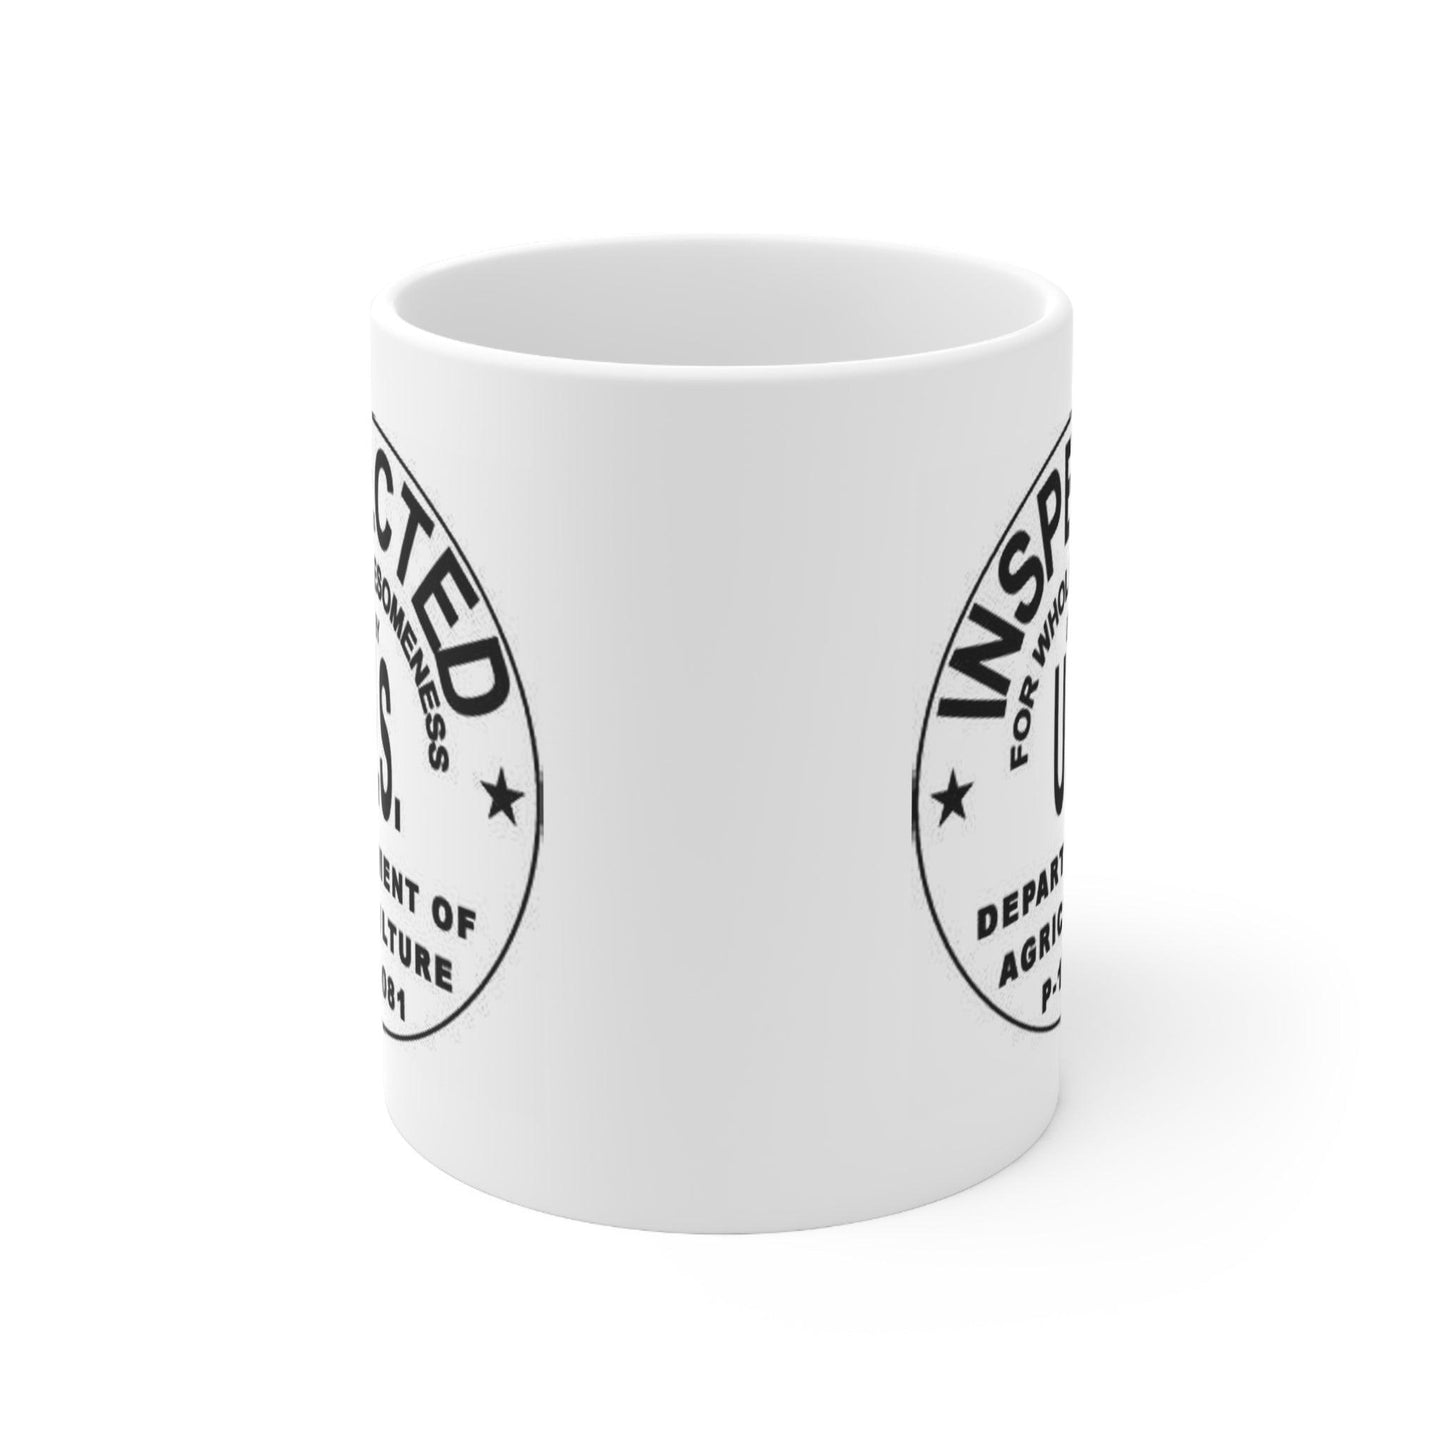 USDA Stamp Ceramic Mug 11oz - The Hufeisen-Ranch (WYO Wagyu)